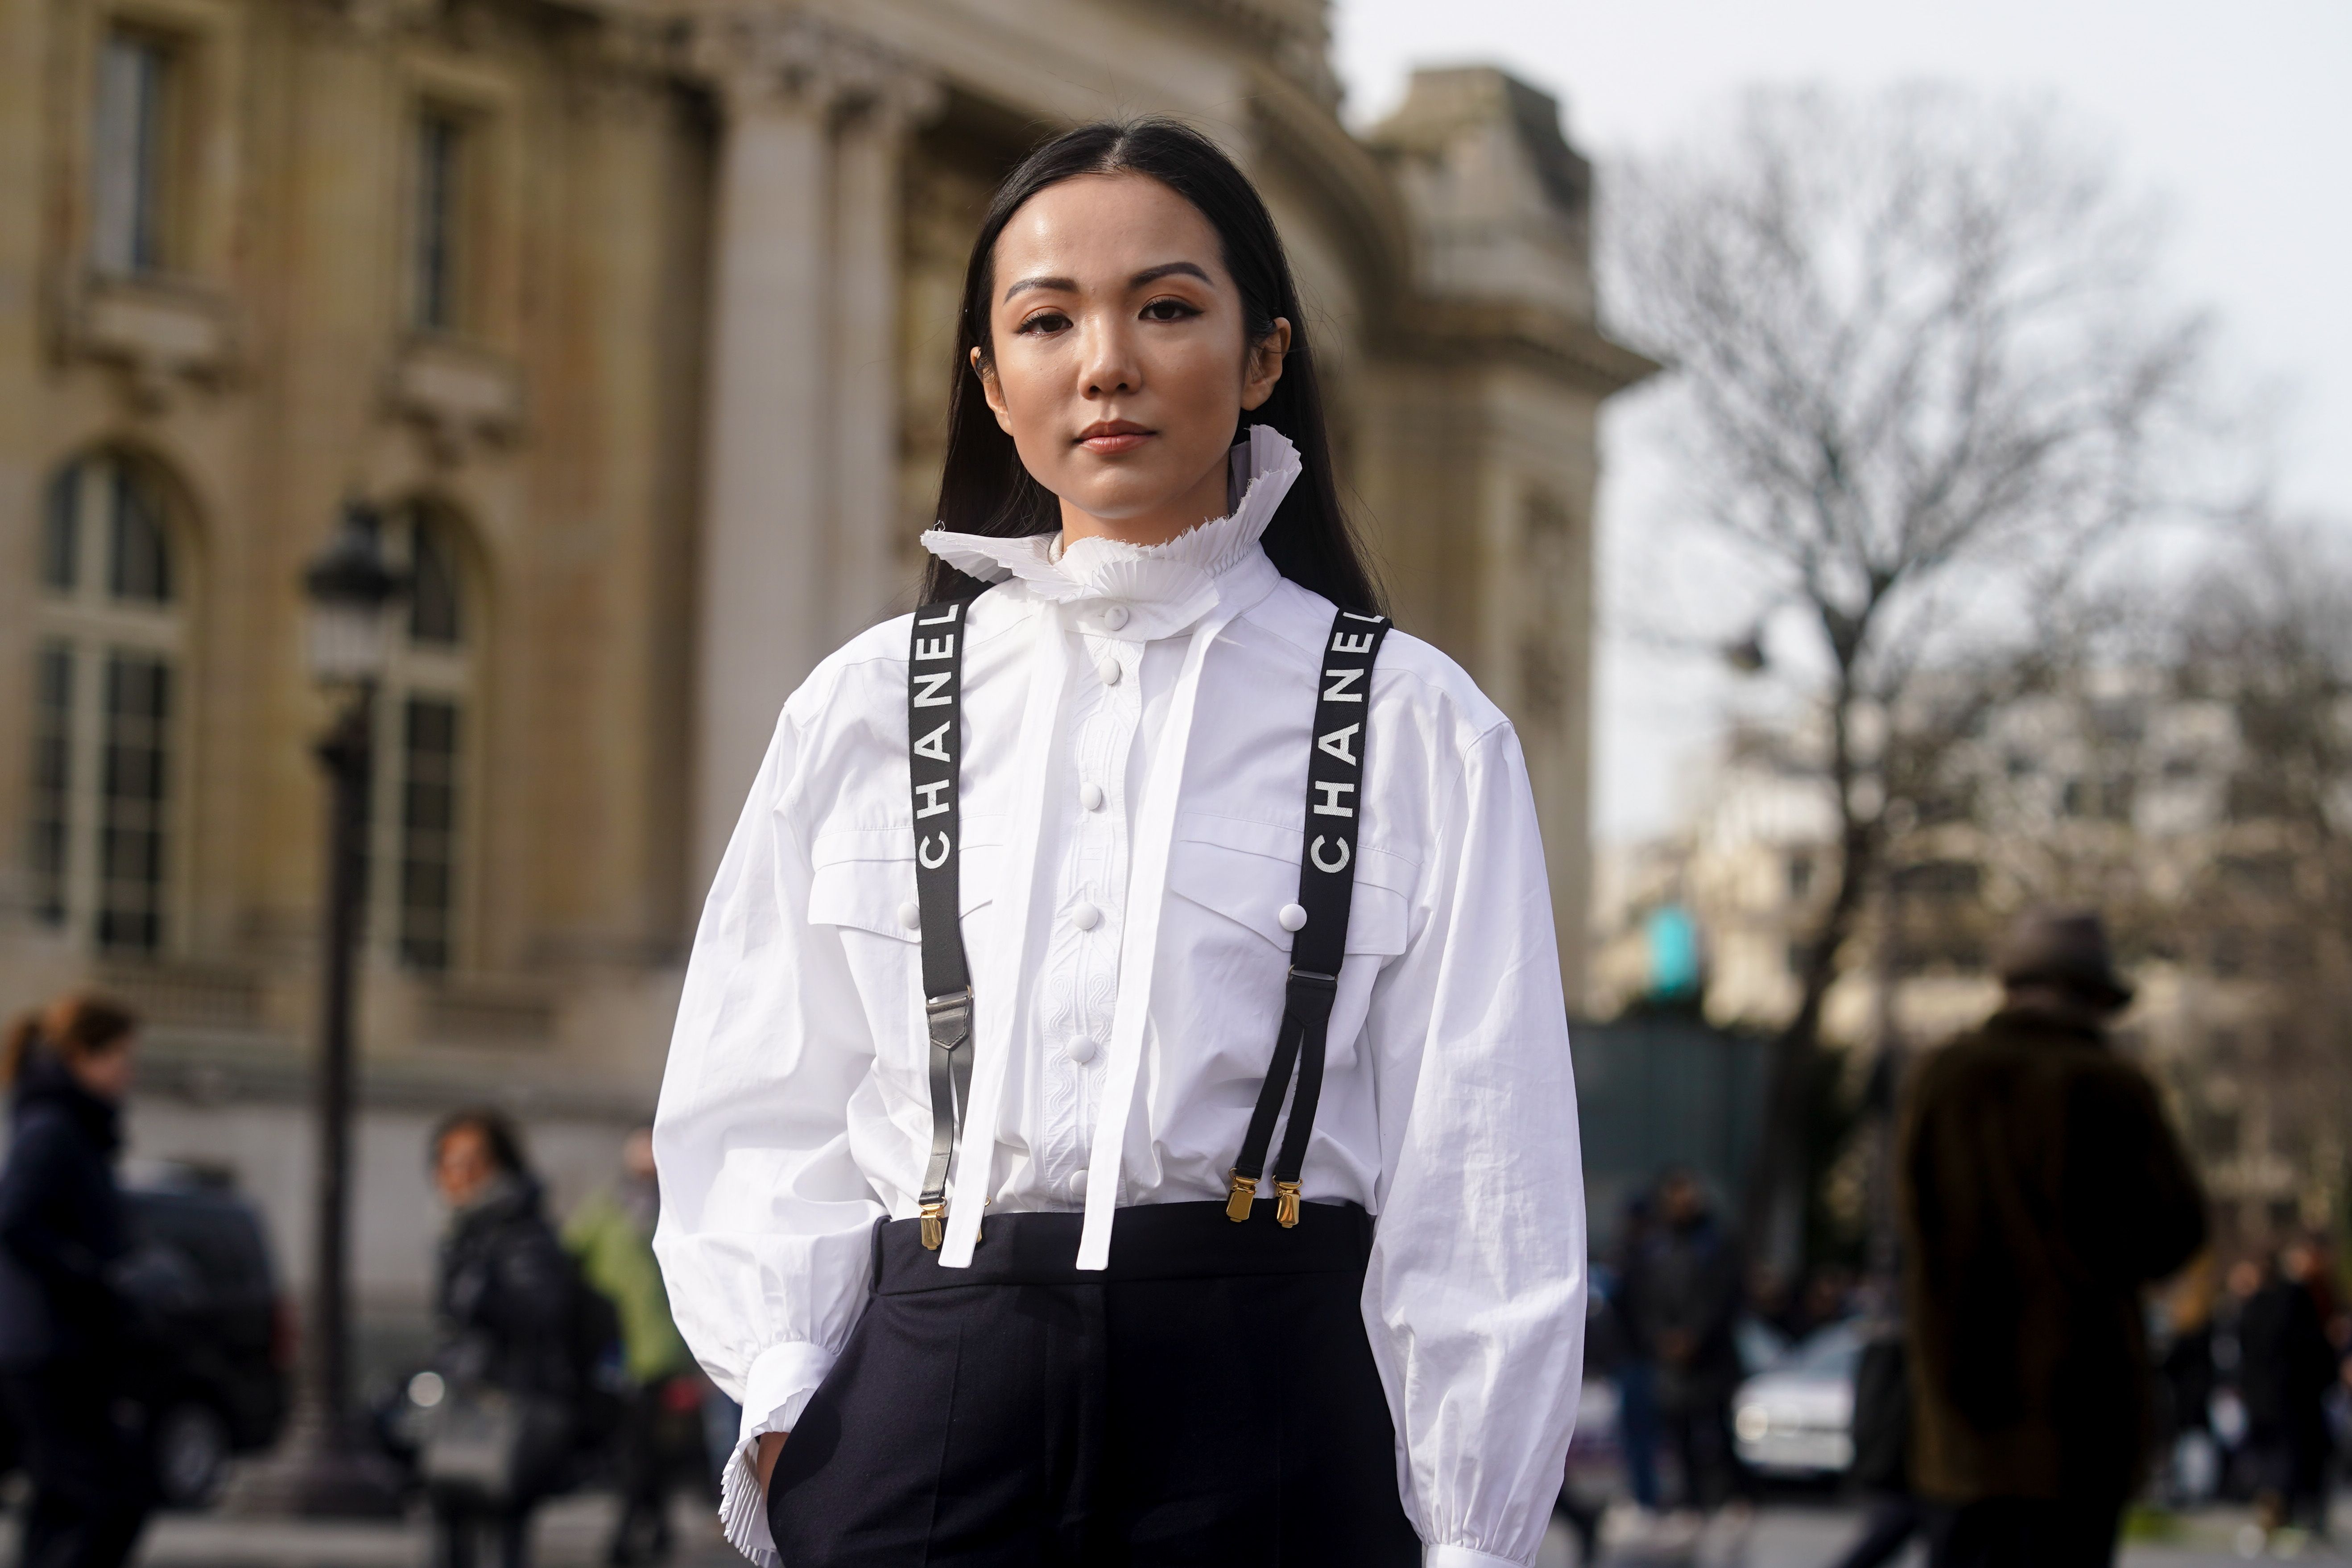 Consulta travesura calificación Zara vende la camisa blanca romántica más buscada de París